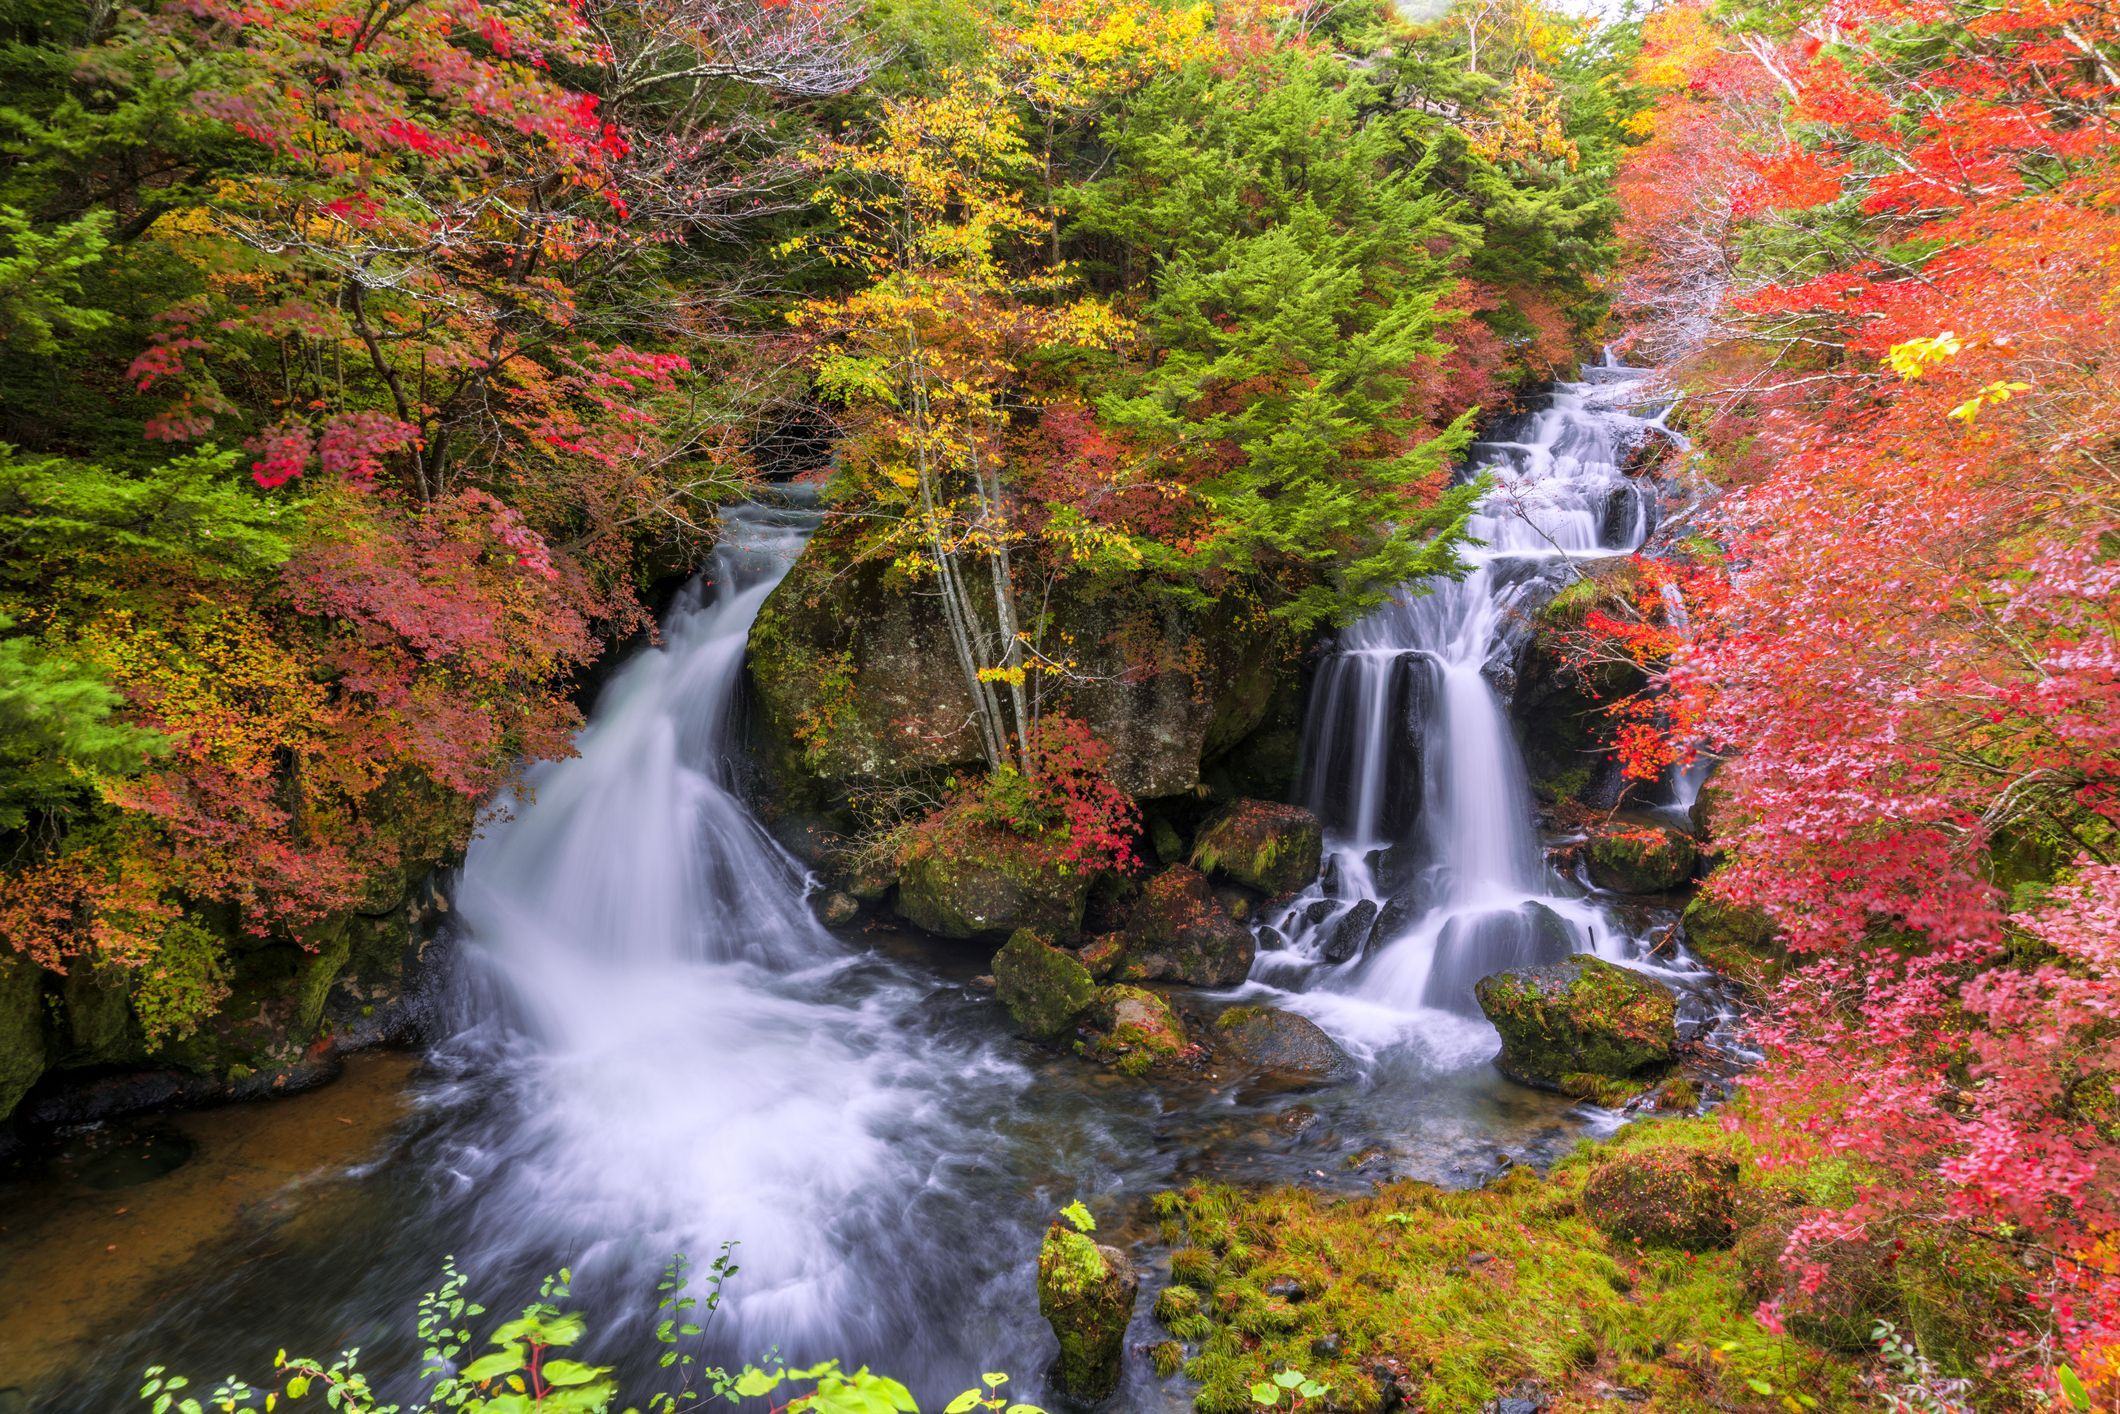 Hình ảnh thác nước trong rừng mùa thu rất đẹp